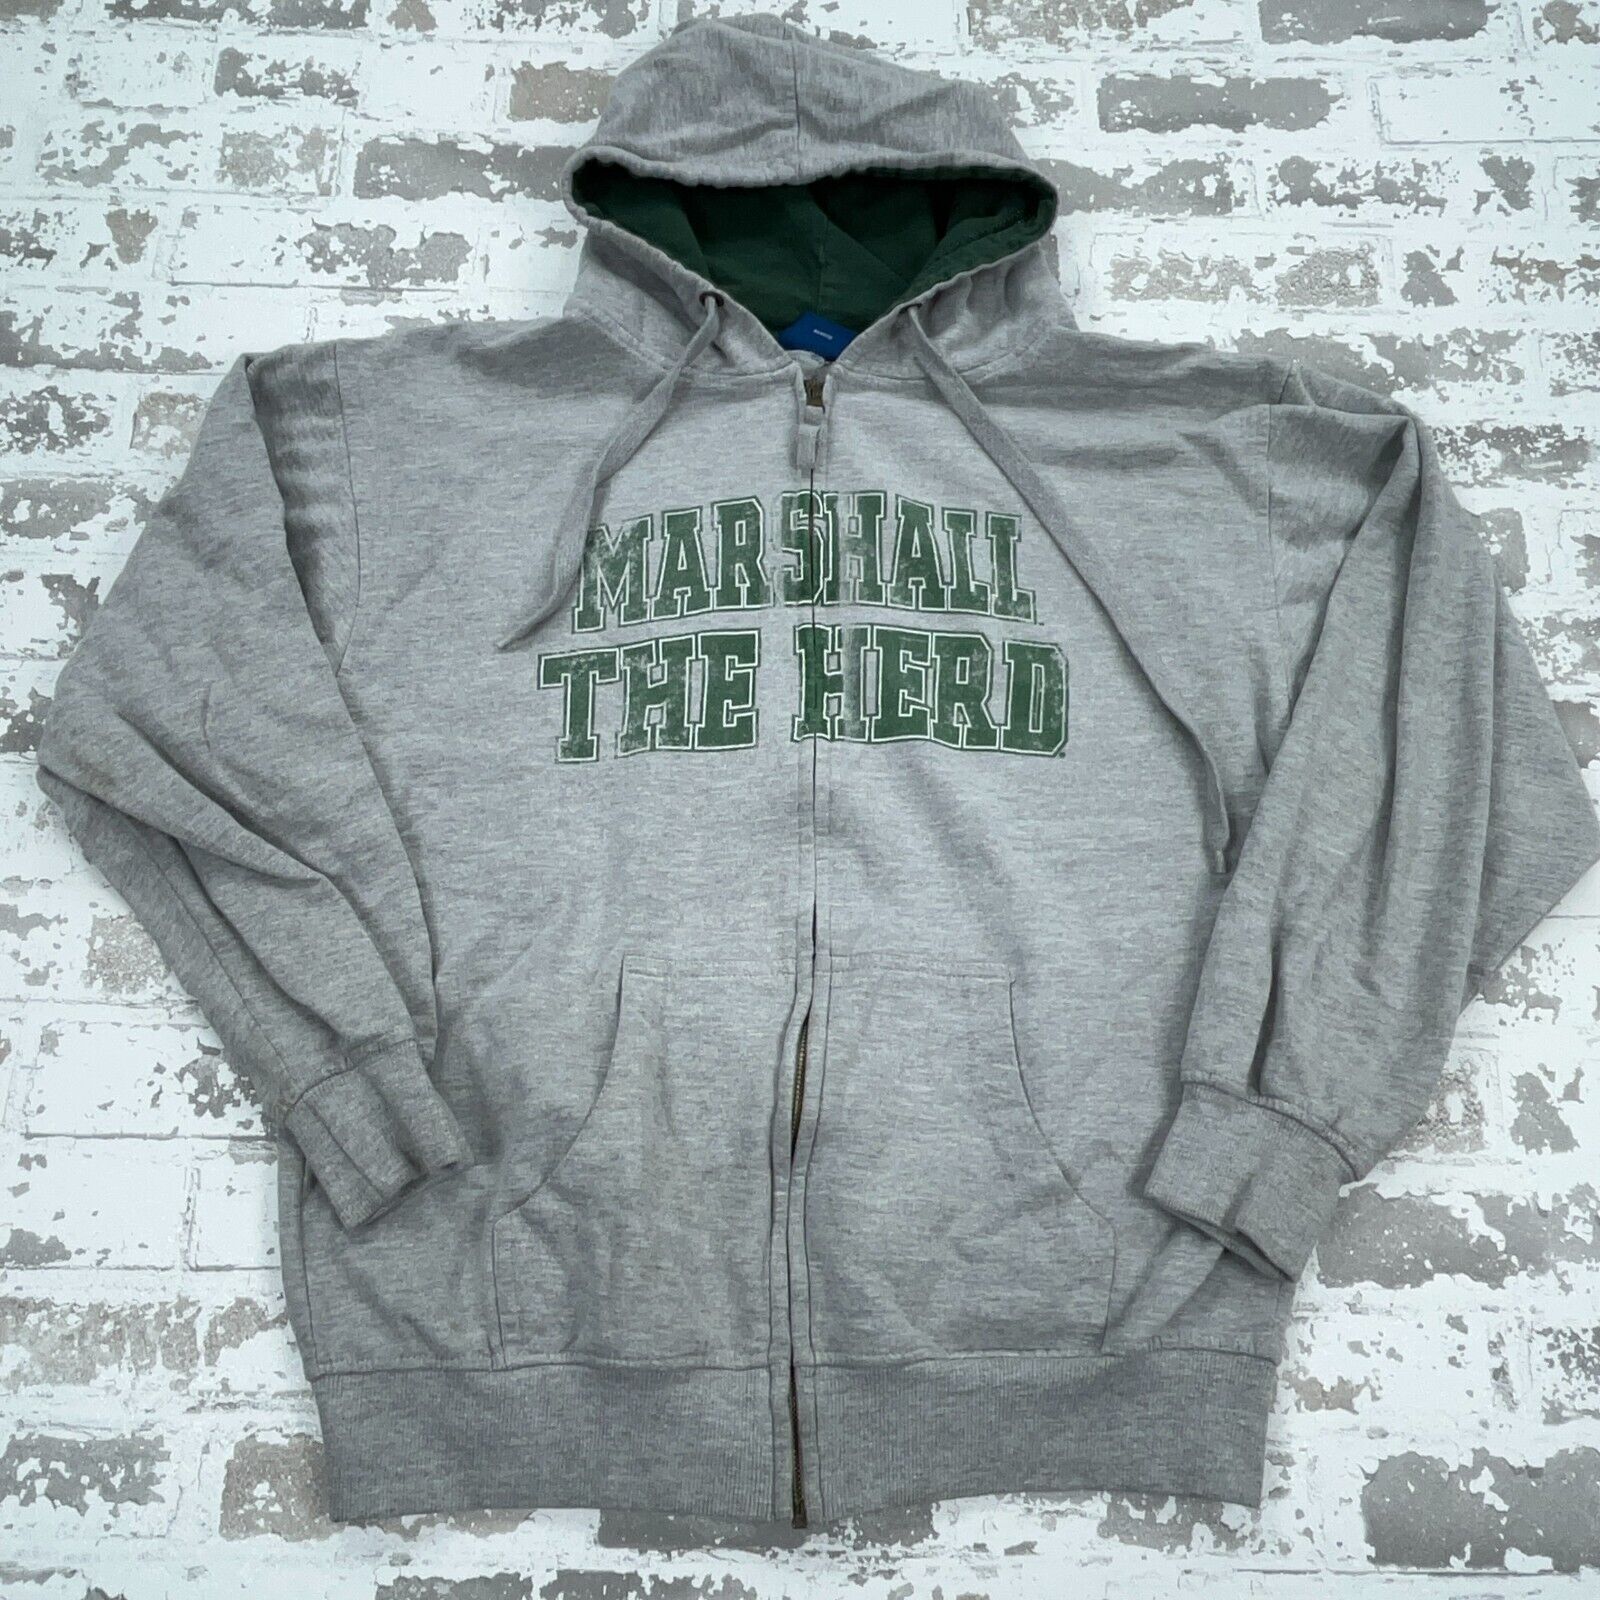 Vintage Marshall Thundering Herd Hoodie Men Large Gray Green Sweatshirt Jacket *